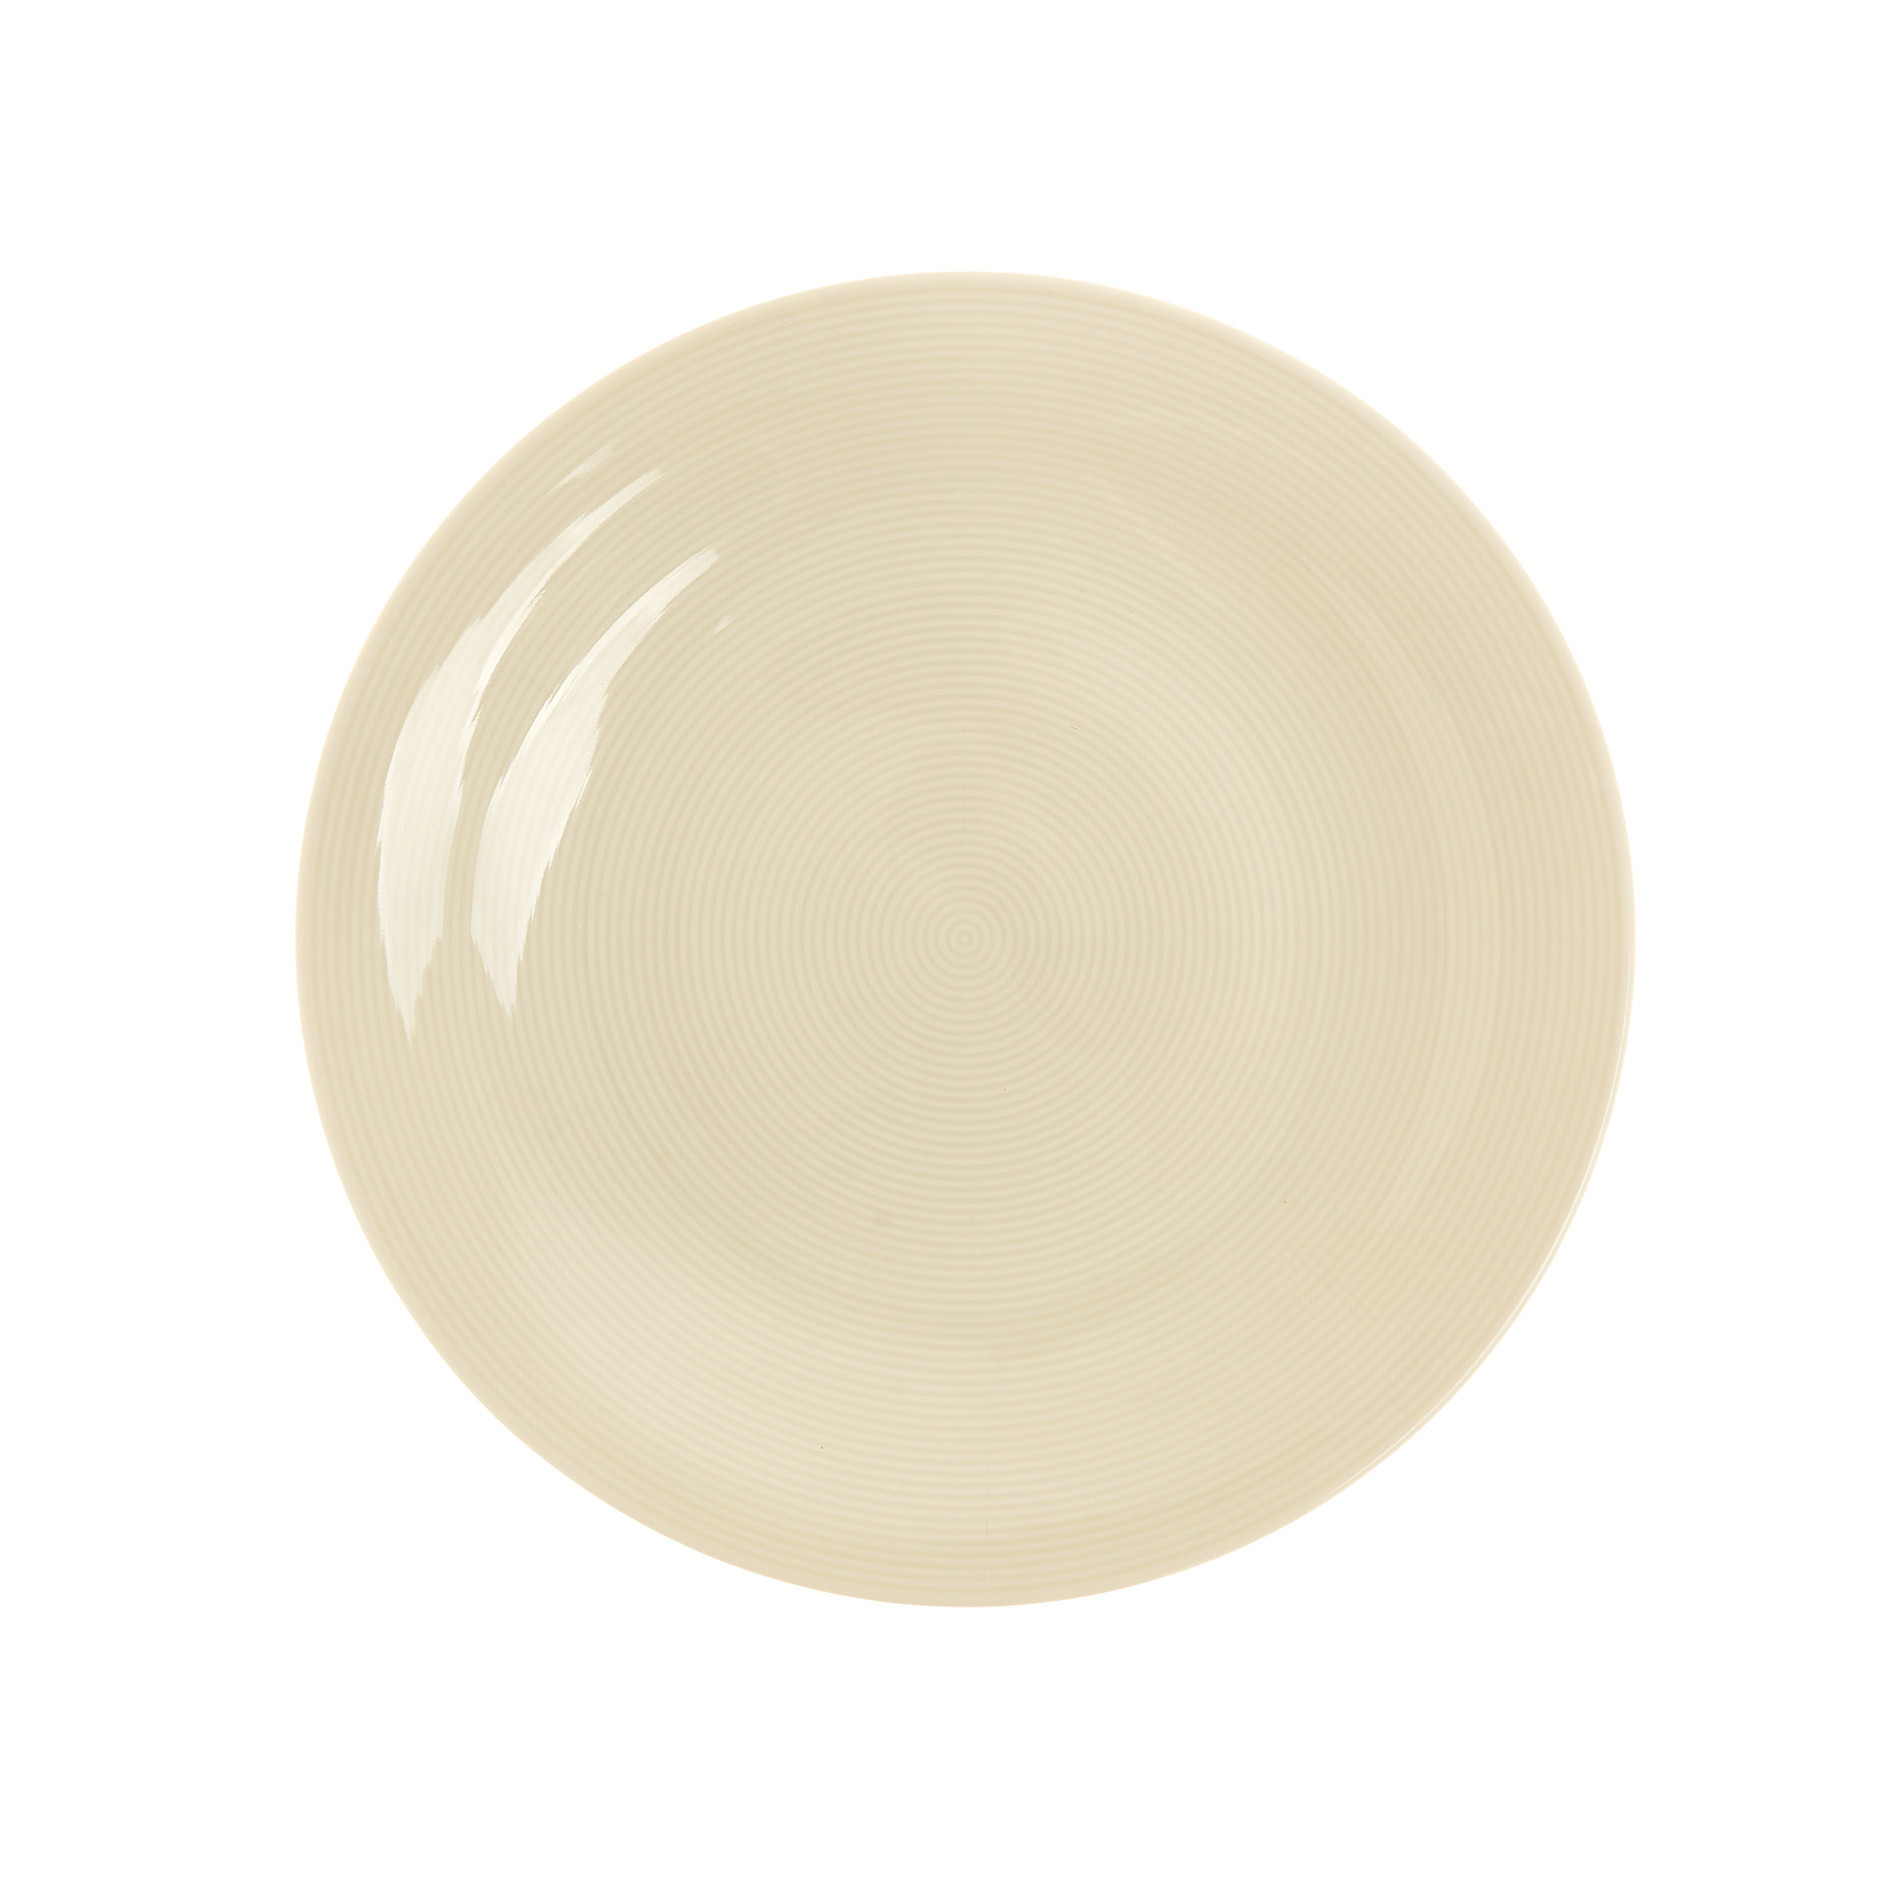 Charme porcelain dinner plate, Beige, large image number 0